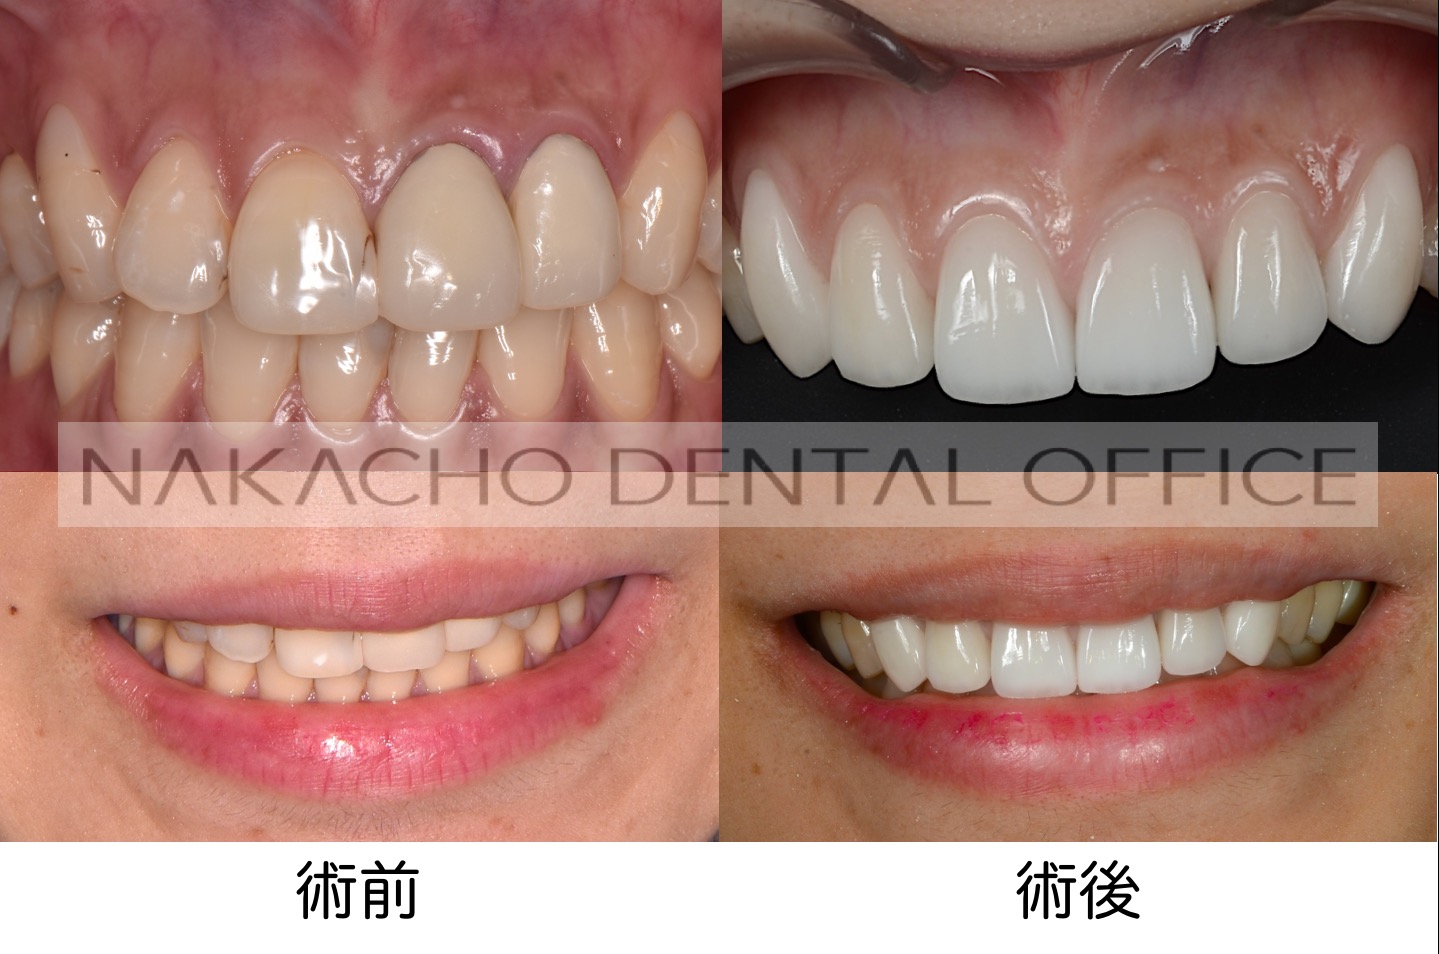 スマイルラインにこだわった審美歯科治療 Nakacho Dental Office Blog